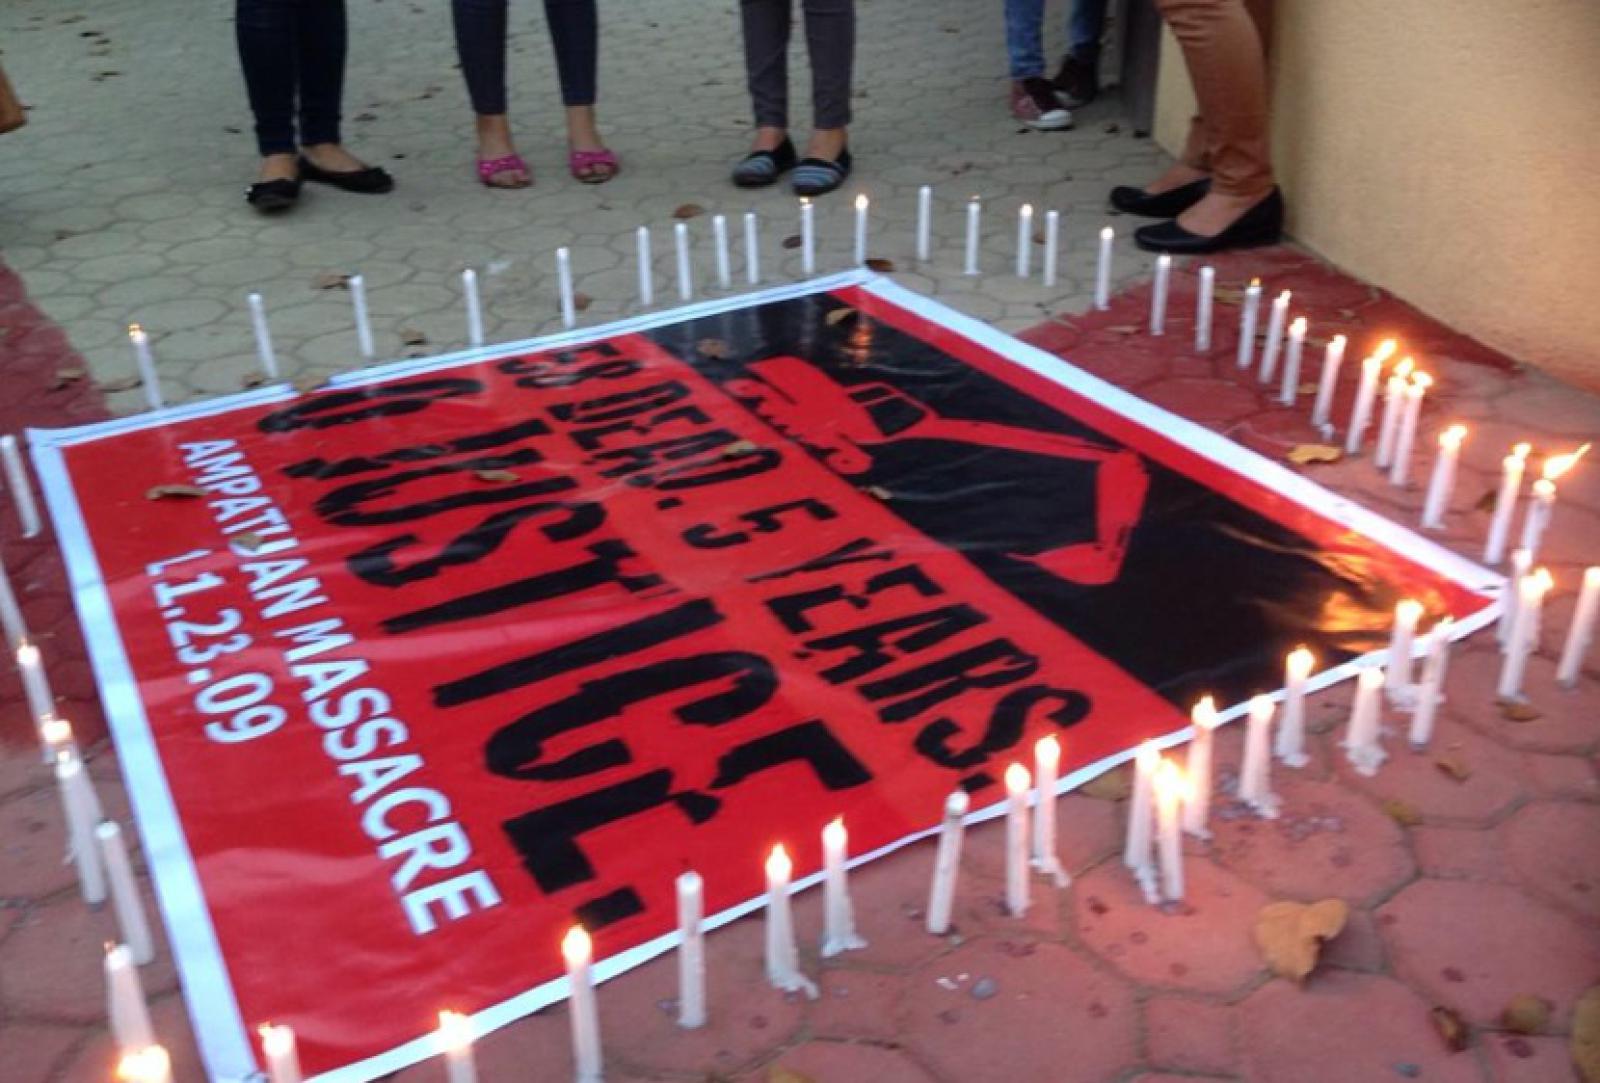 Velas de solidaridad para conmemorar el 5to aniversario de la Masacre de Ampatuan en la ciudad de Dagupan, Filipinas